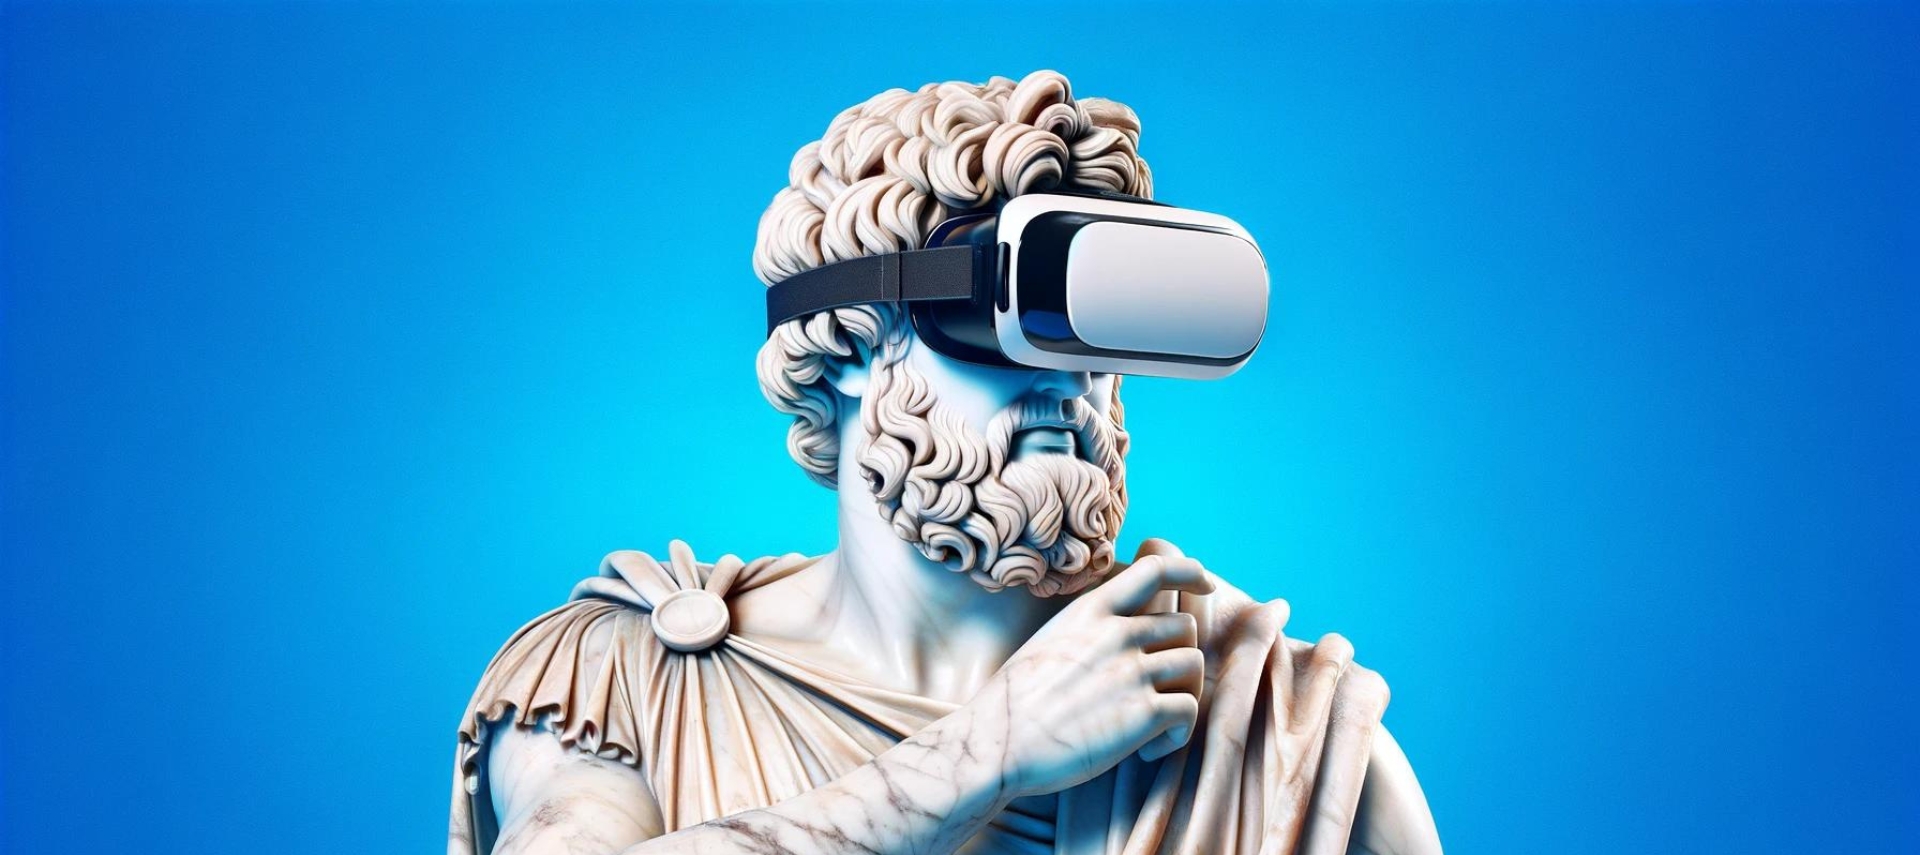 Pitches in Zeiten der Virtuellen Realität (VR)_Bild von DALL-E